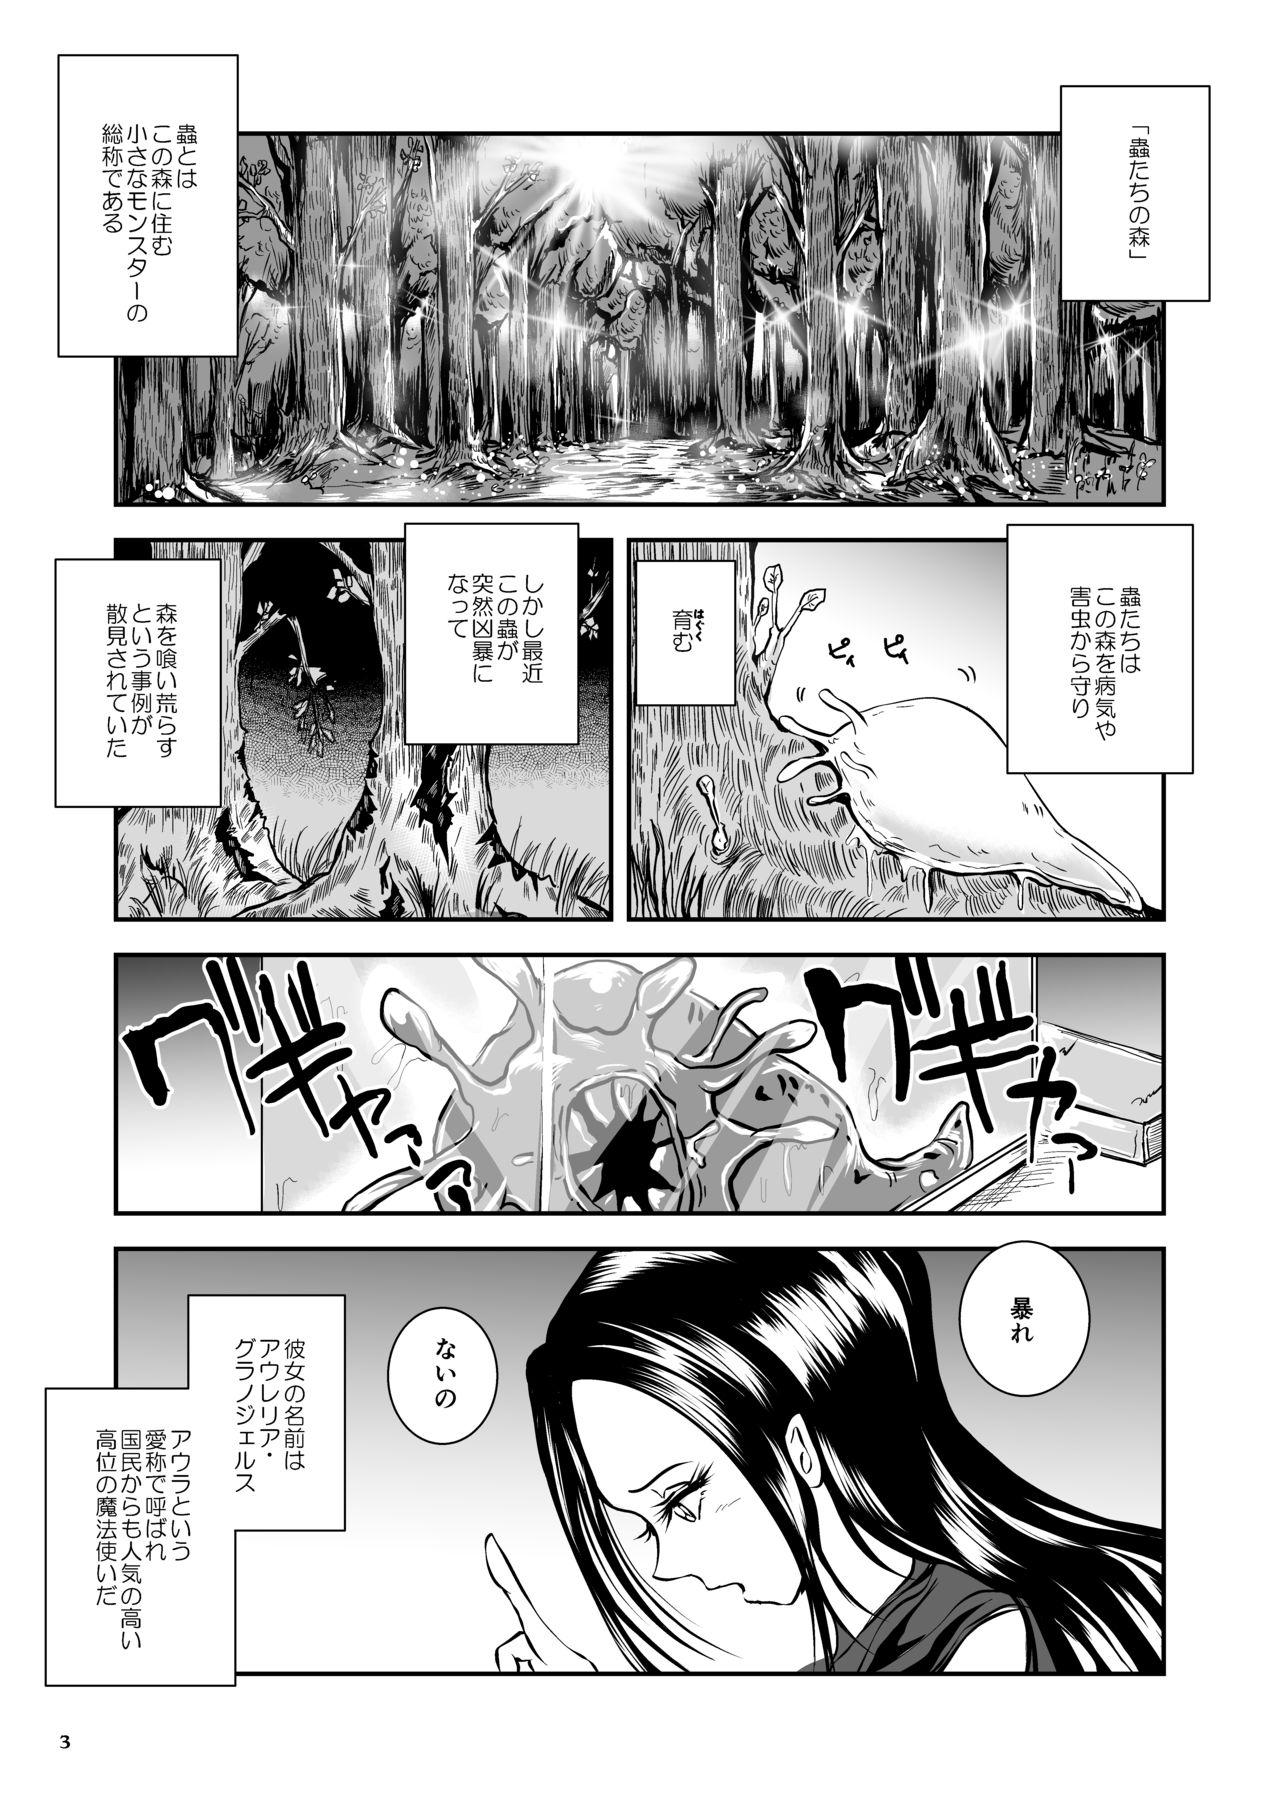 Best Oonamekuji to Kurokami no Mahoutsukai - Parasitized Giant Slugs V.S. Sorceress of the Black Hair as Aura Blowjobs - Page 3